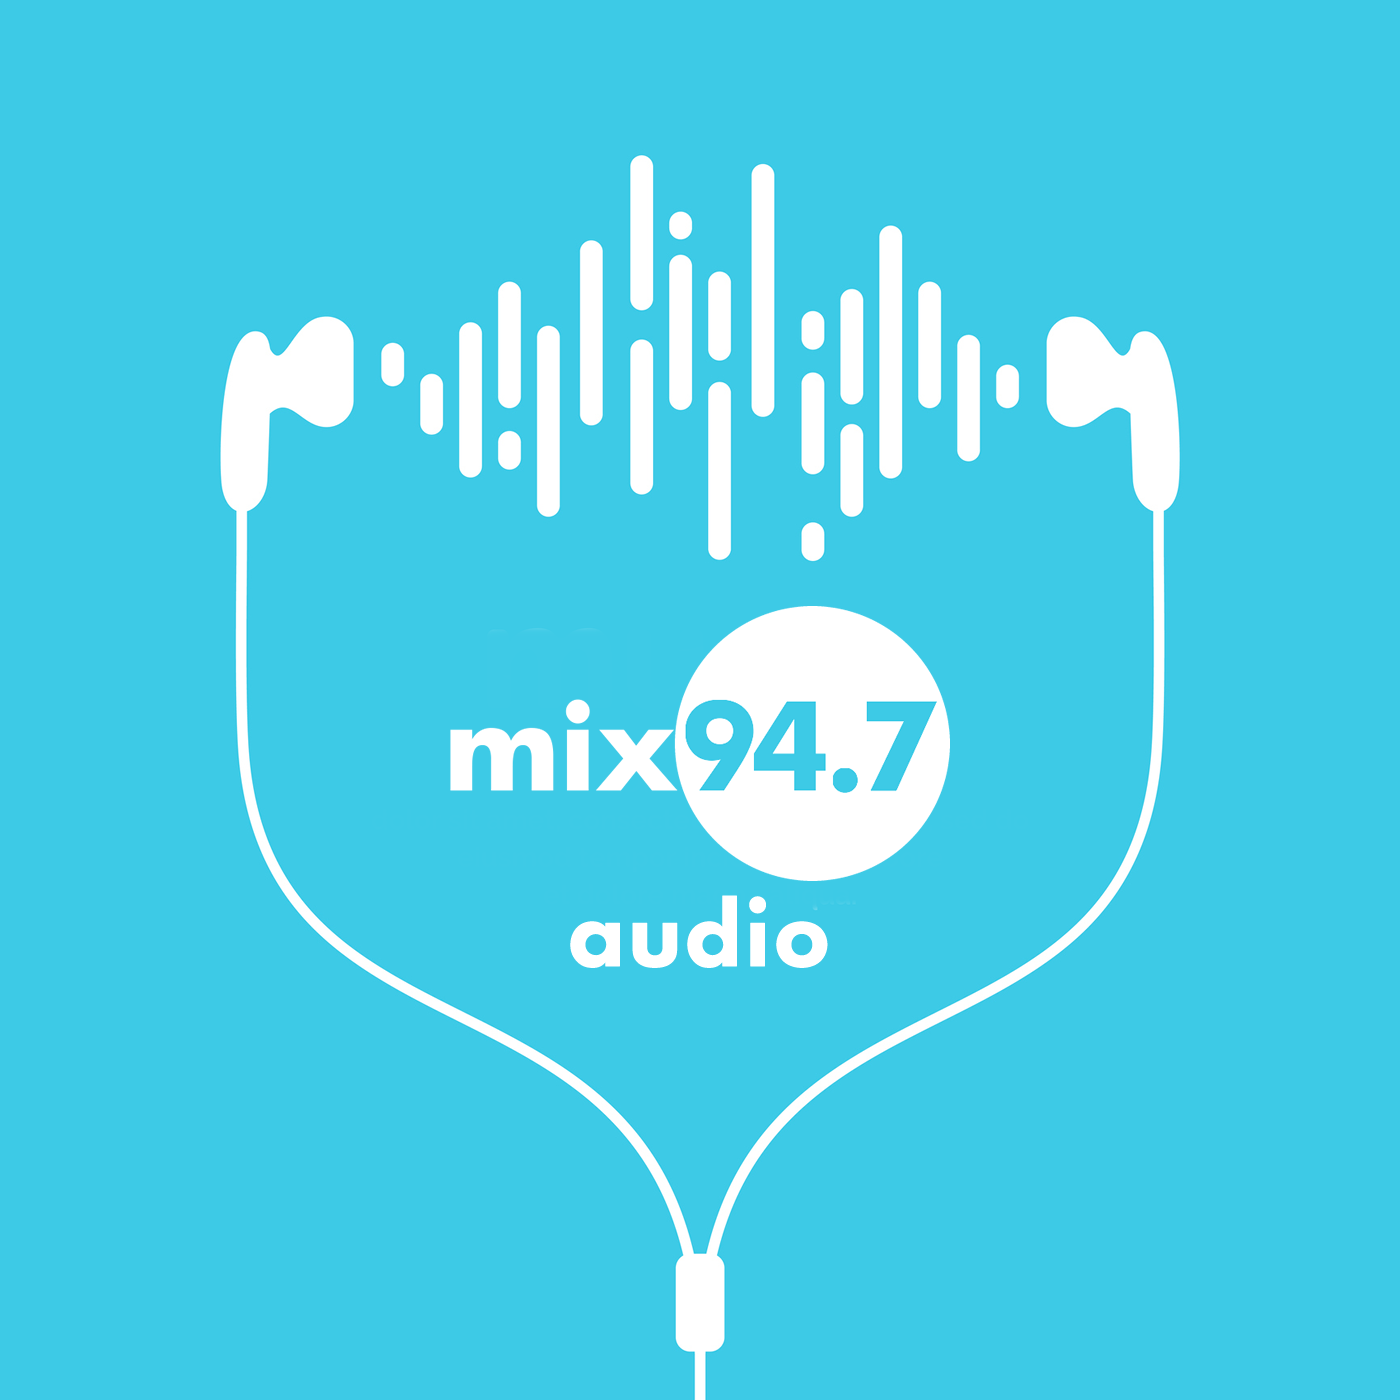 Mix 94.7 Audio